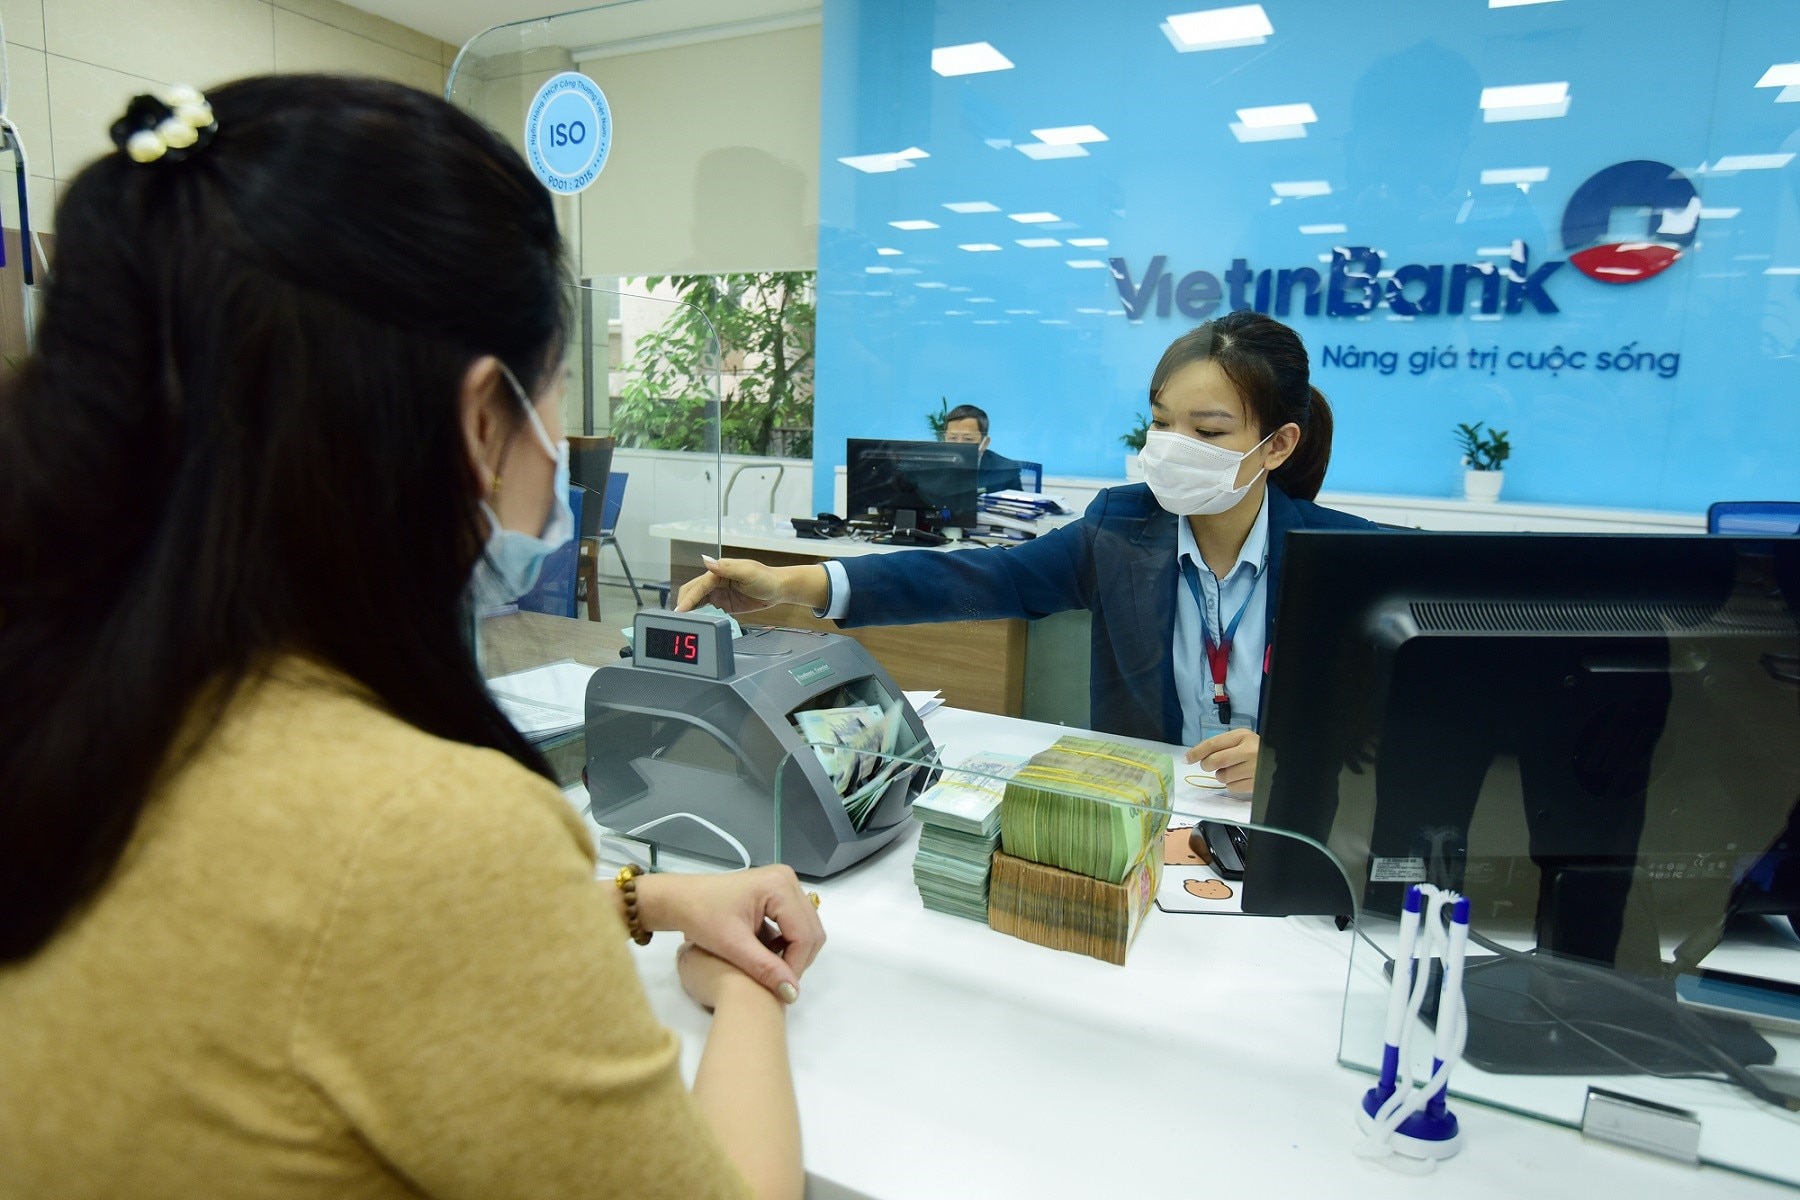 Tài chính - Ngân hàng - VietinBank phát hành 16.000 tỷ đồng trái phiếu, chào bán đến 30 đợt